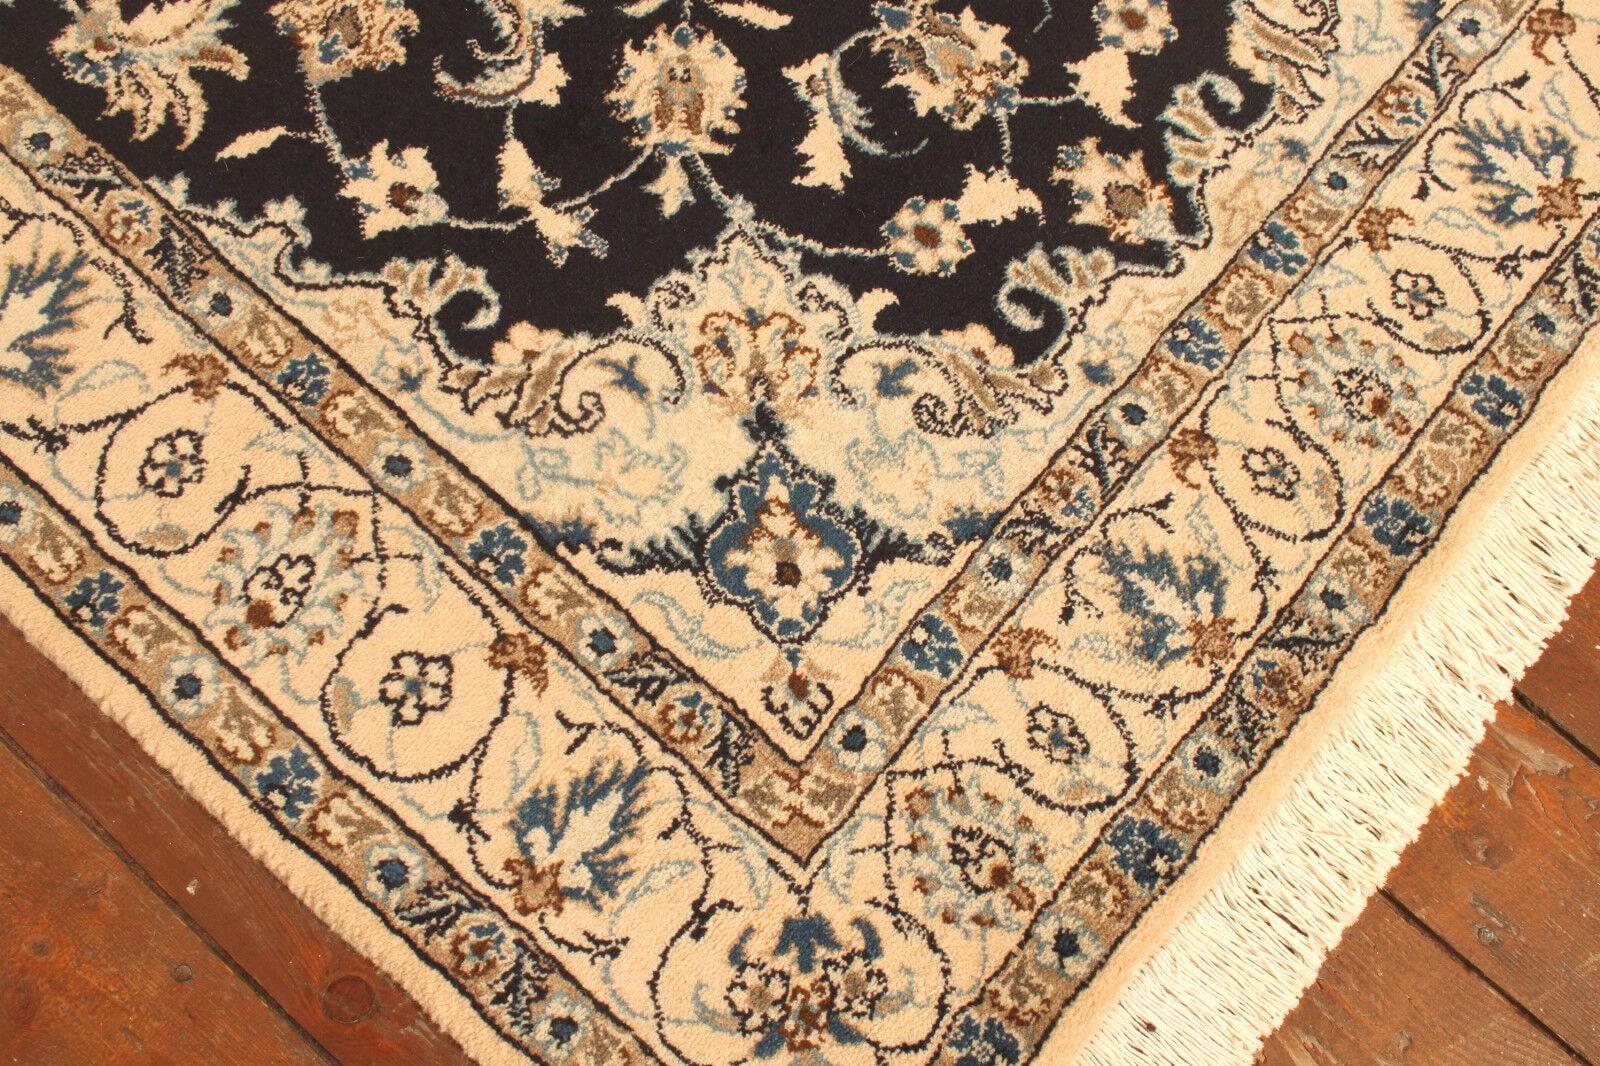 Handgefertigter Vintage Persian Style Nain Teppich (3.9' x 6.6' / 120cm x 202cm)

Erleben Sie die Eleganz persischer Handwerkskunst mit unserem handgefertigten Nain-Teppich im persischen Vintage-Stil. Dieser aus den 1980er Jahren stammende